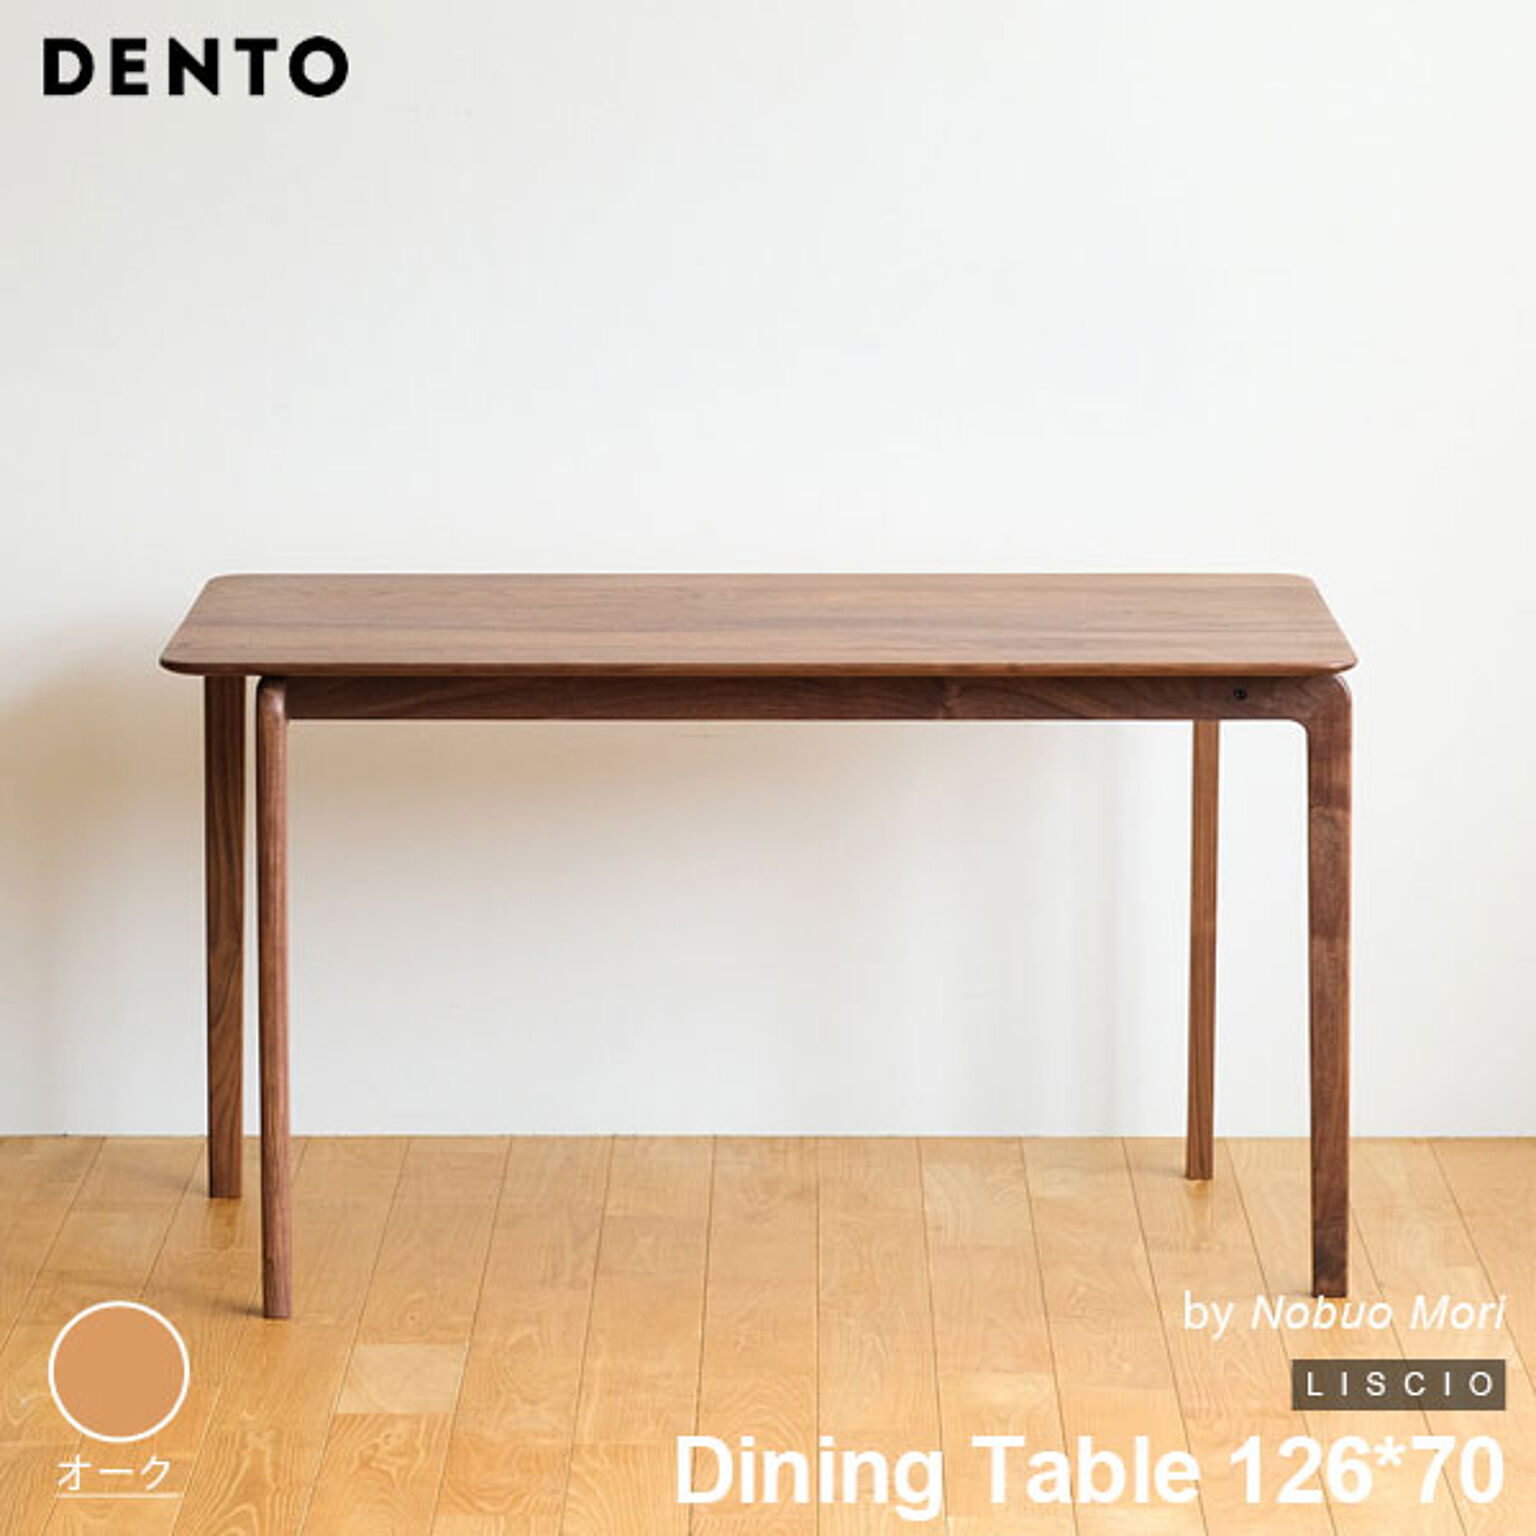 ダイニングテーブル 木製 長方形 4人用 LISCIO Dining Table 126*70 126cm リッショ 木製 無垢 スタイリッシュ 北欧 ダイニング 日本製 